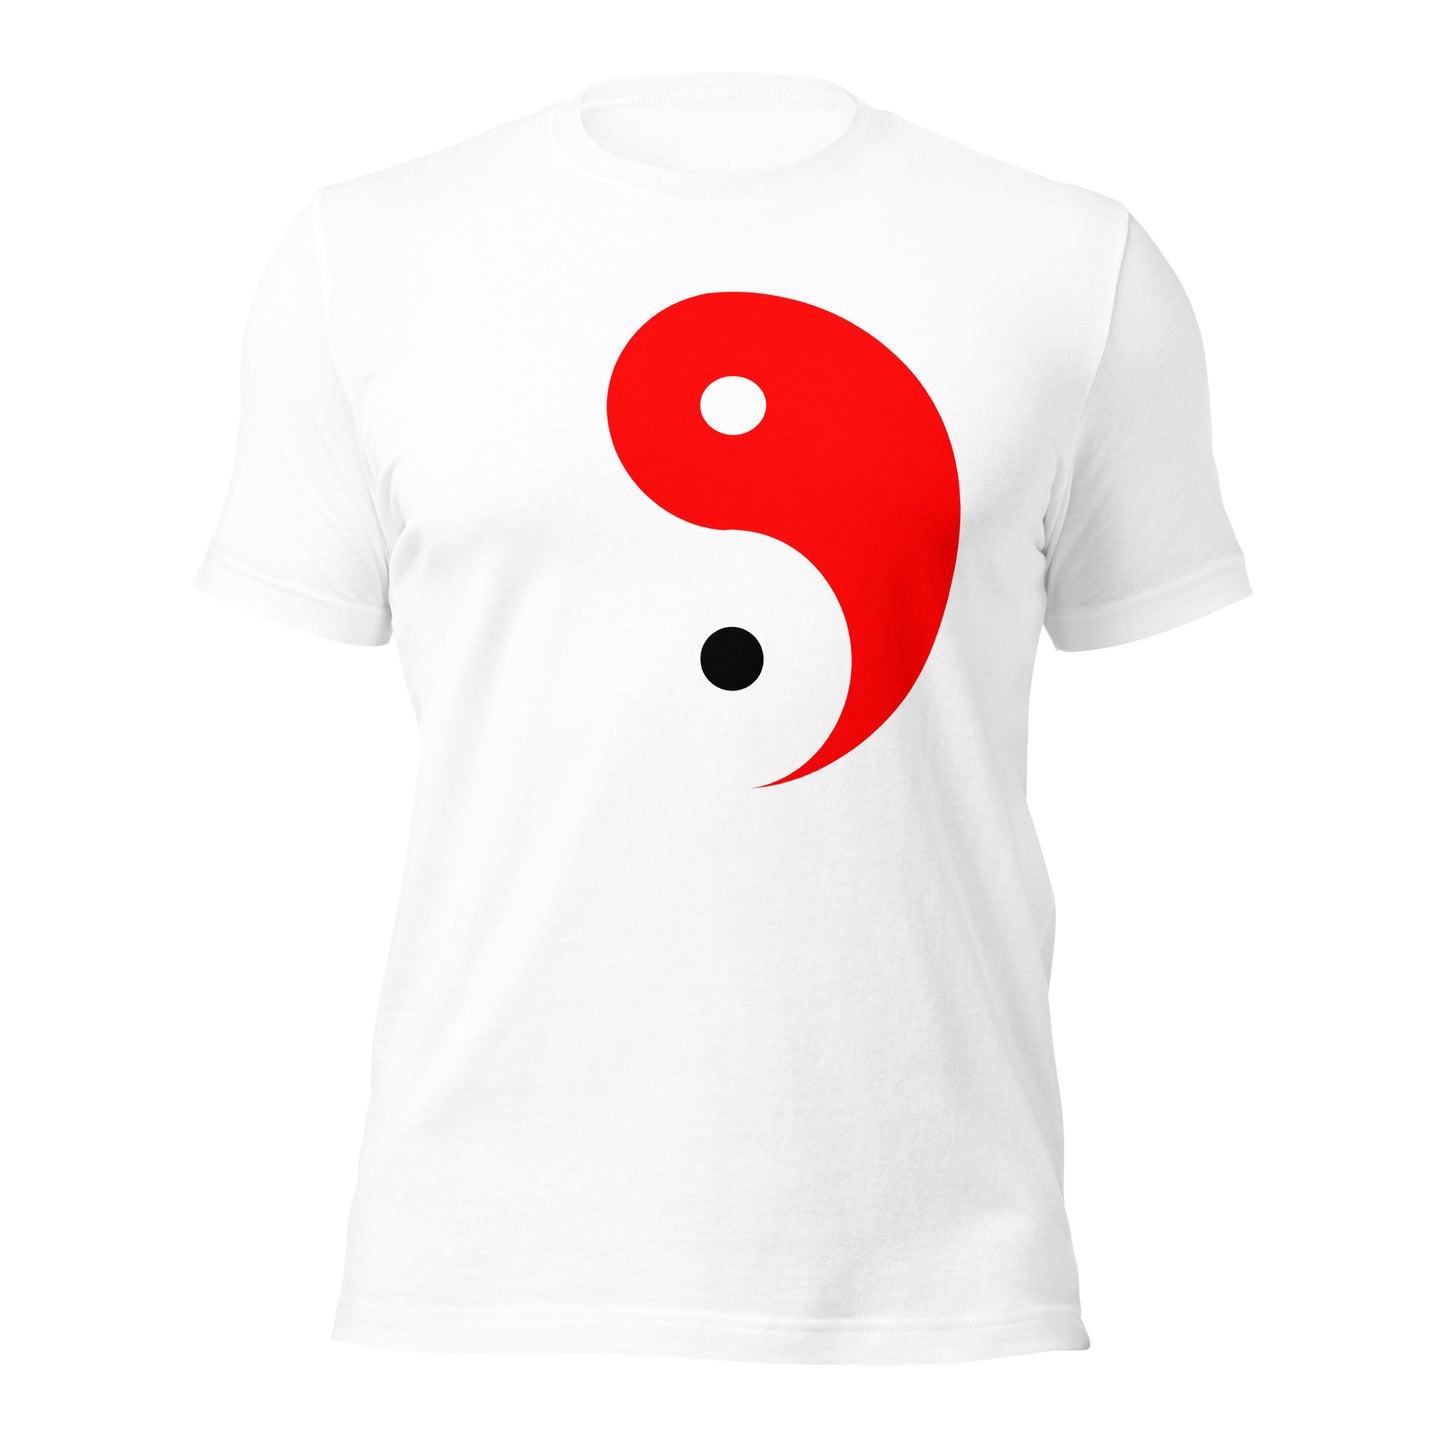 yin yang - tshirts - men tshirts - graphic tees - gym - workout - usa - cananda